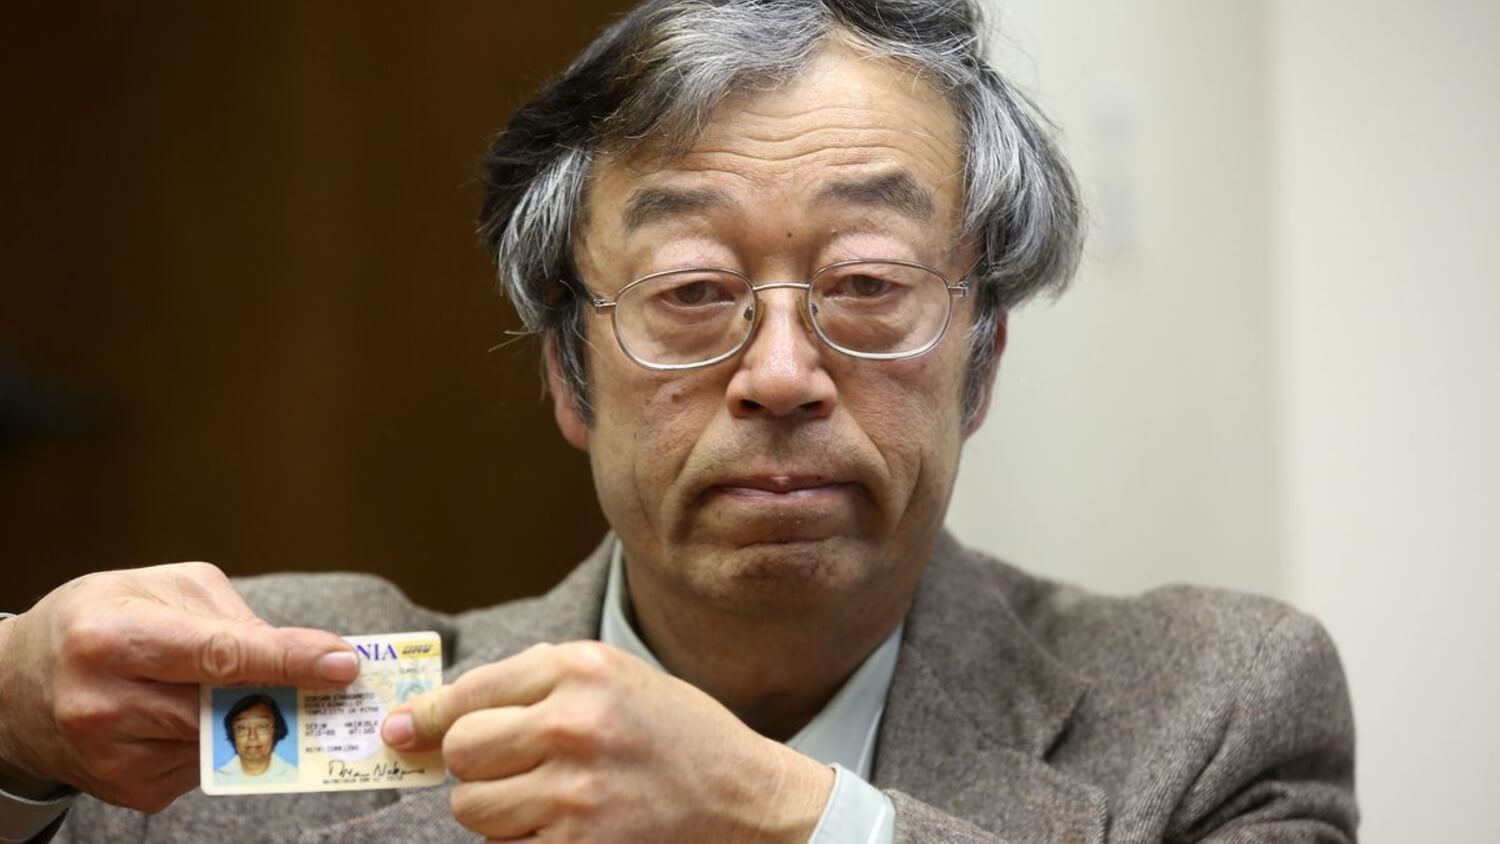 Кто создал Биткоин. Сатоши Накамото изображают так. Хотя на фотографии — Дориан Накамото, который не относится к криптовалюте. Фото.